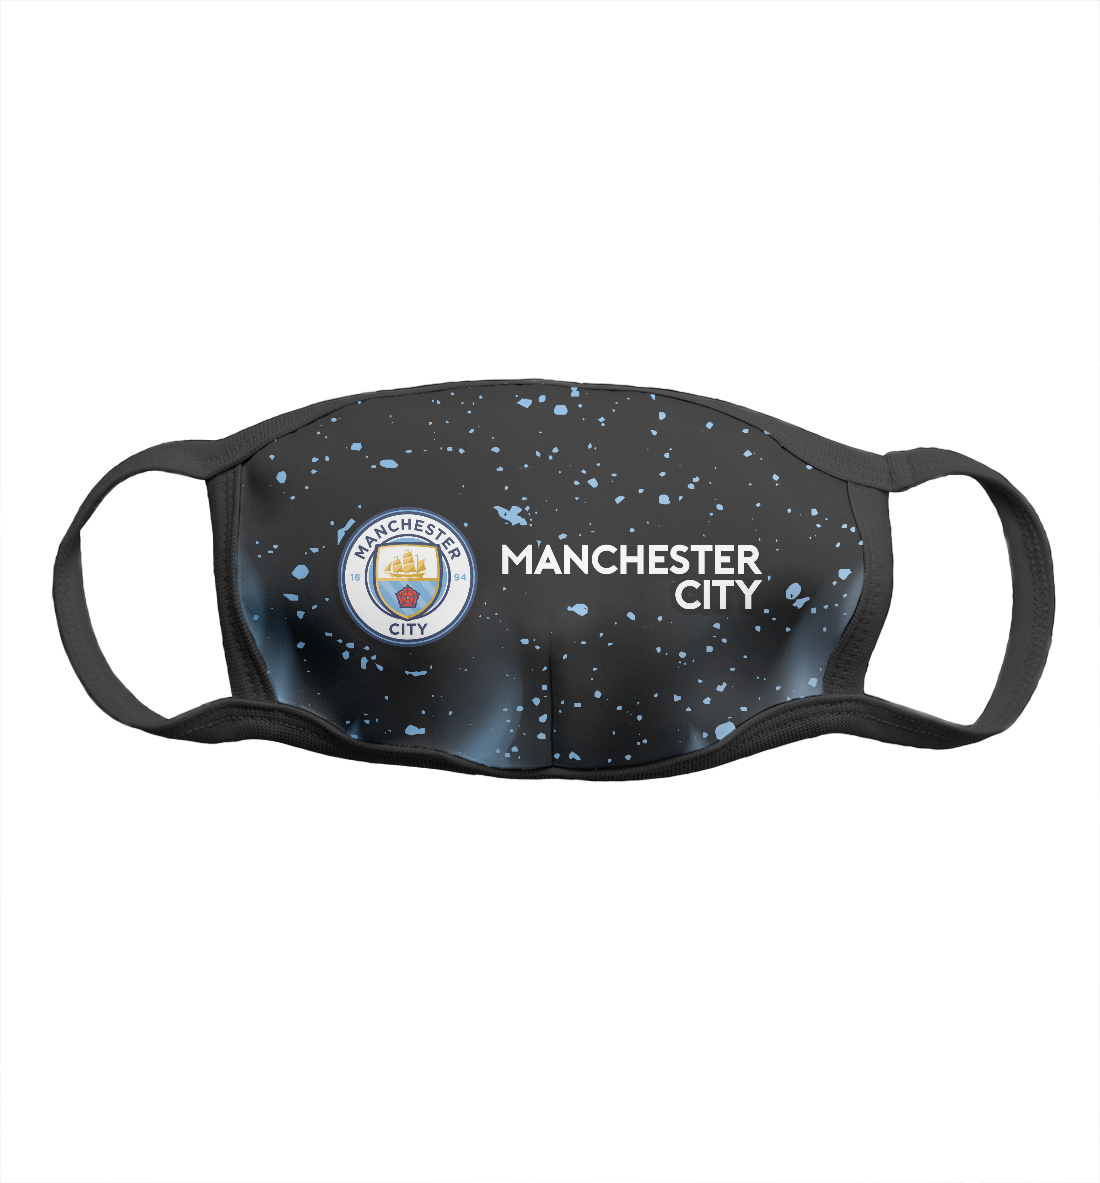 Детская Маска Manchester City / Манчестер Сити для мальчиков, артикул MNC-517850-msk-2mp